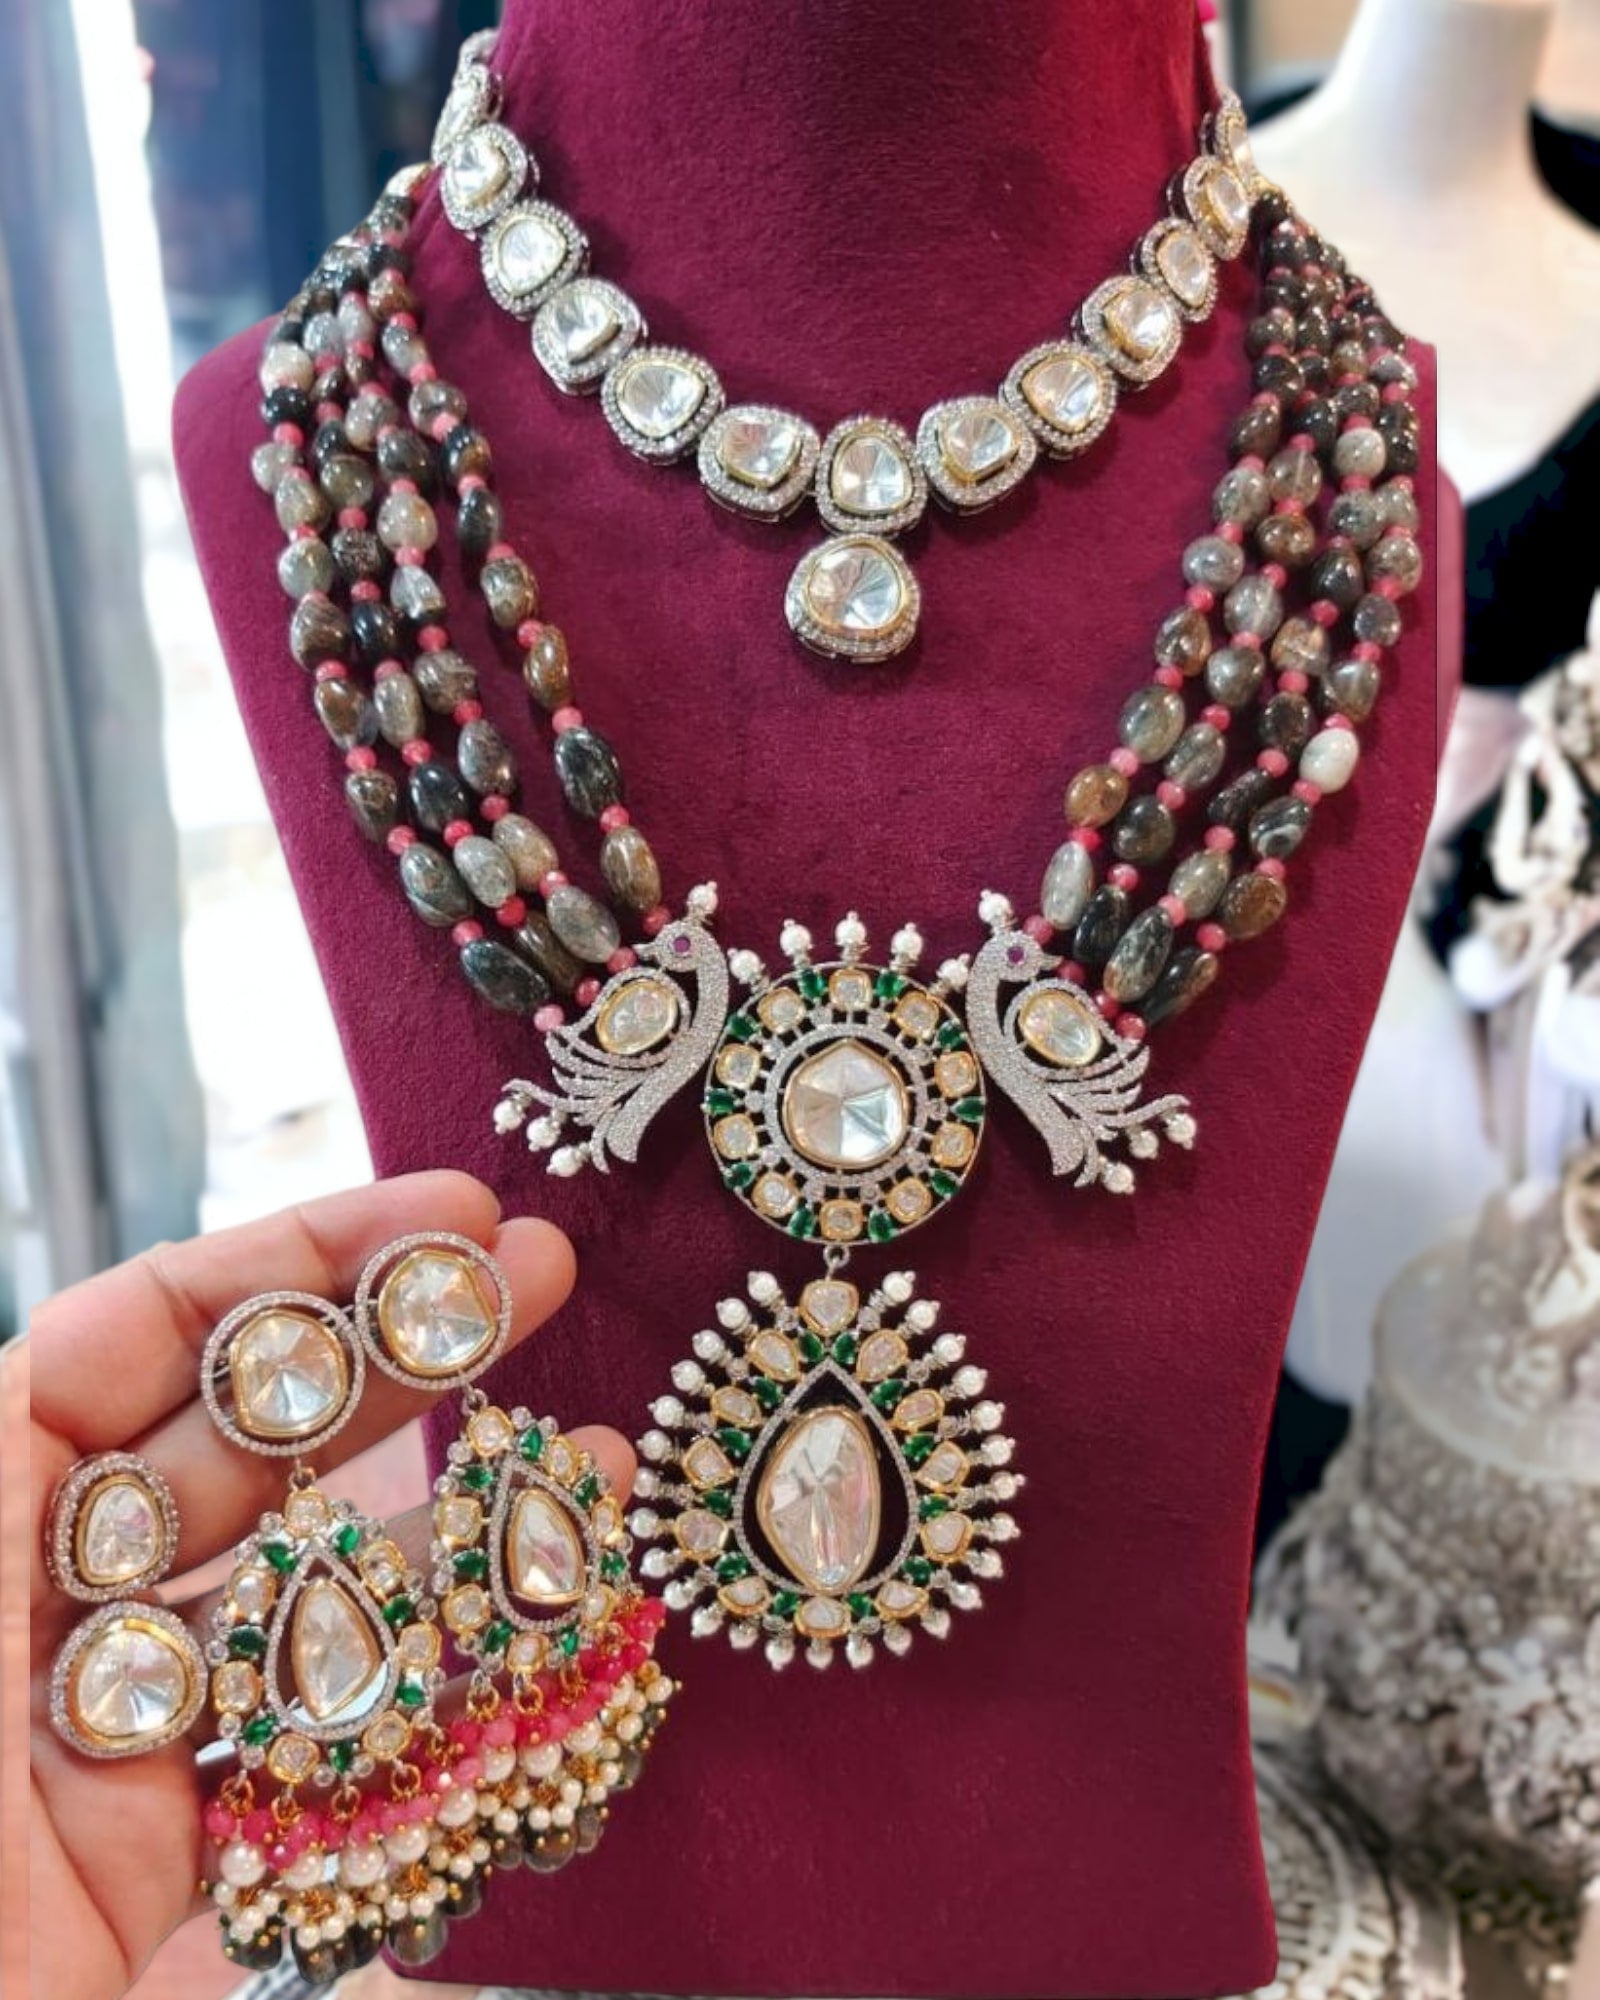 Nandini semi precious necklace set in labradorite color color